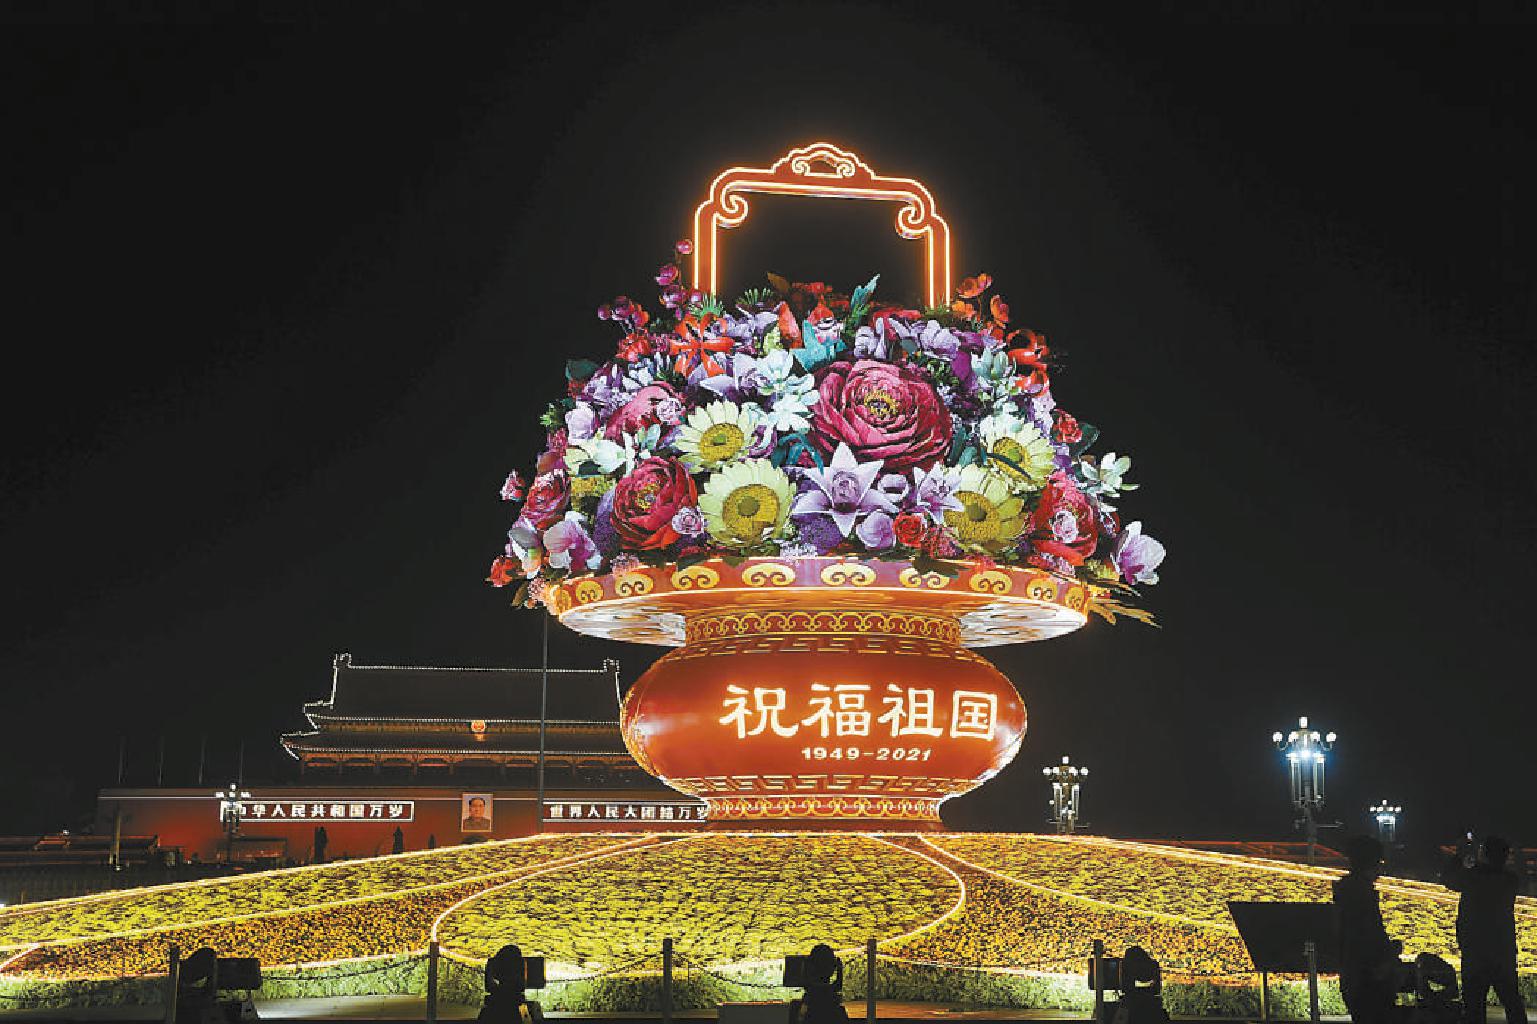 2021年9月29日晚,天安门广场上的"祝福祖国"大花篮亮灯,国庆节日气氛